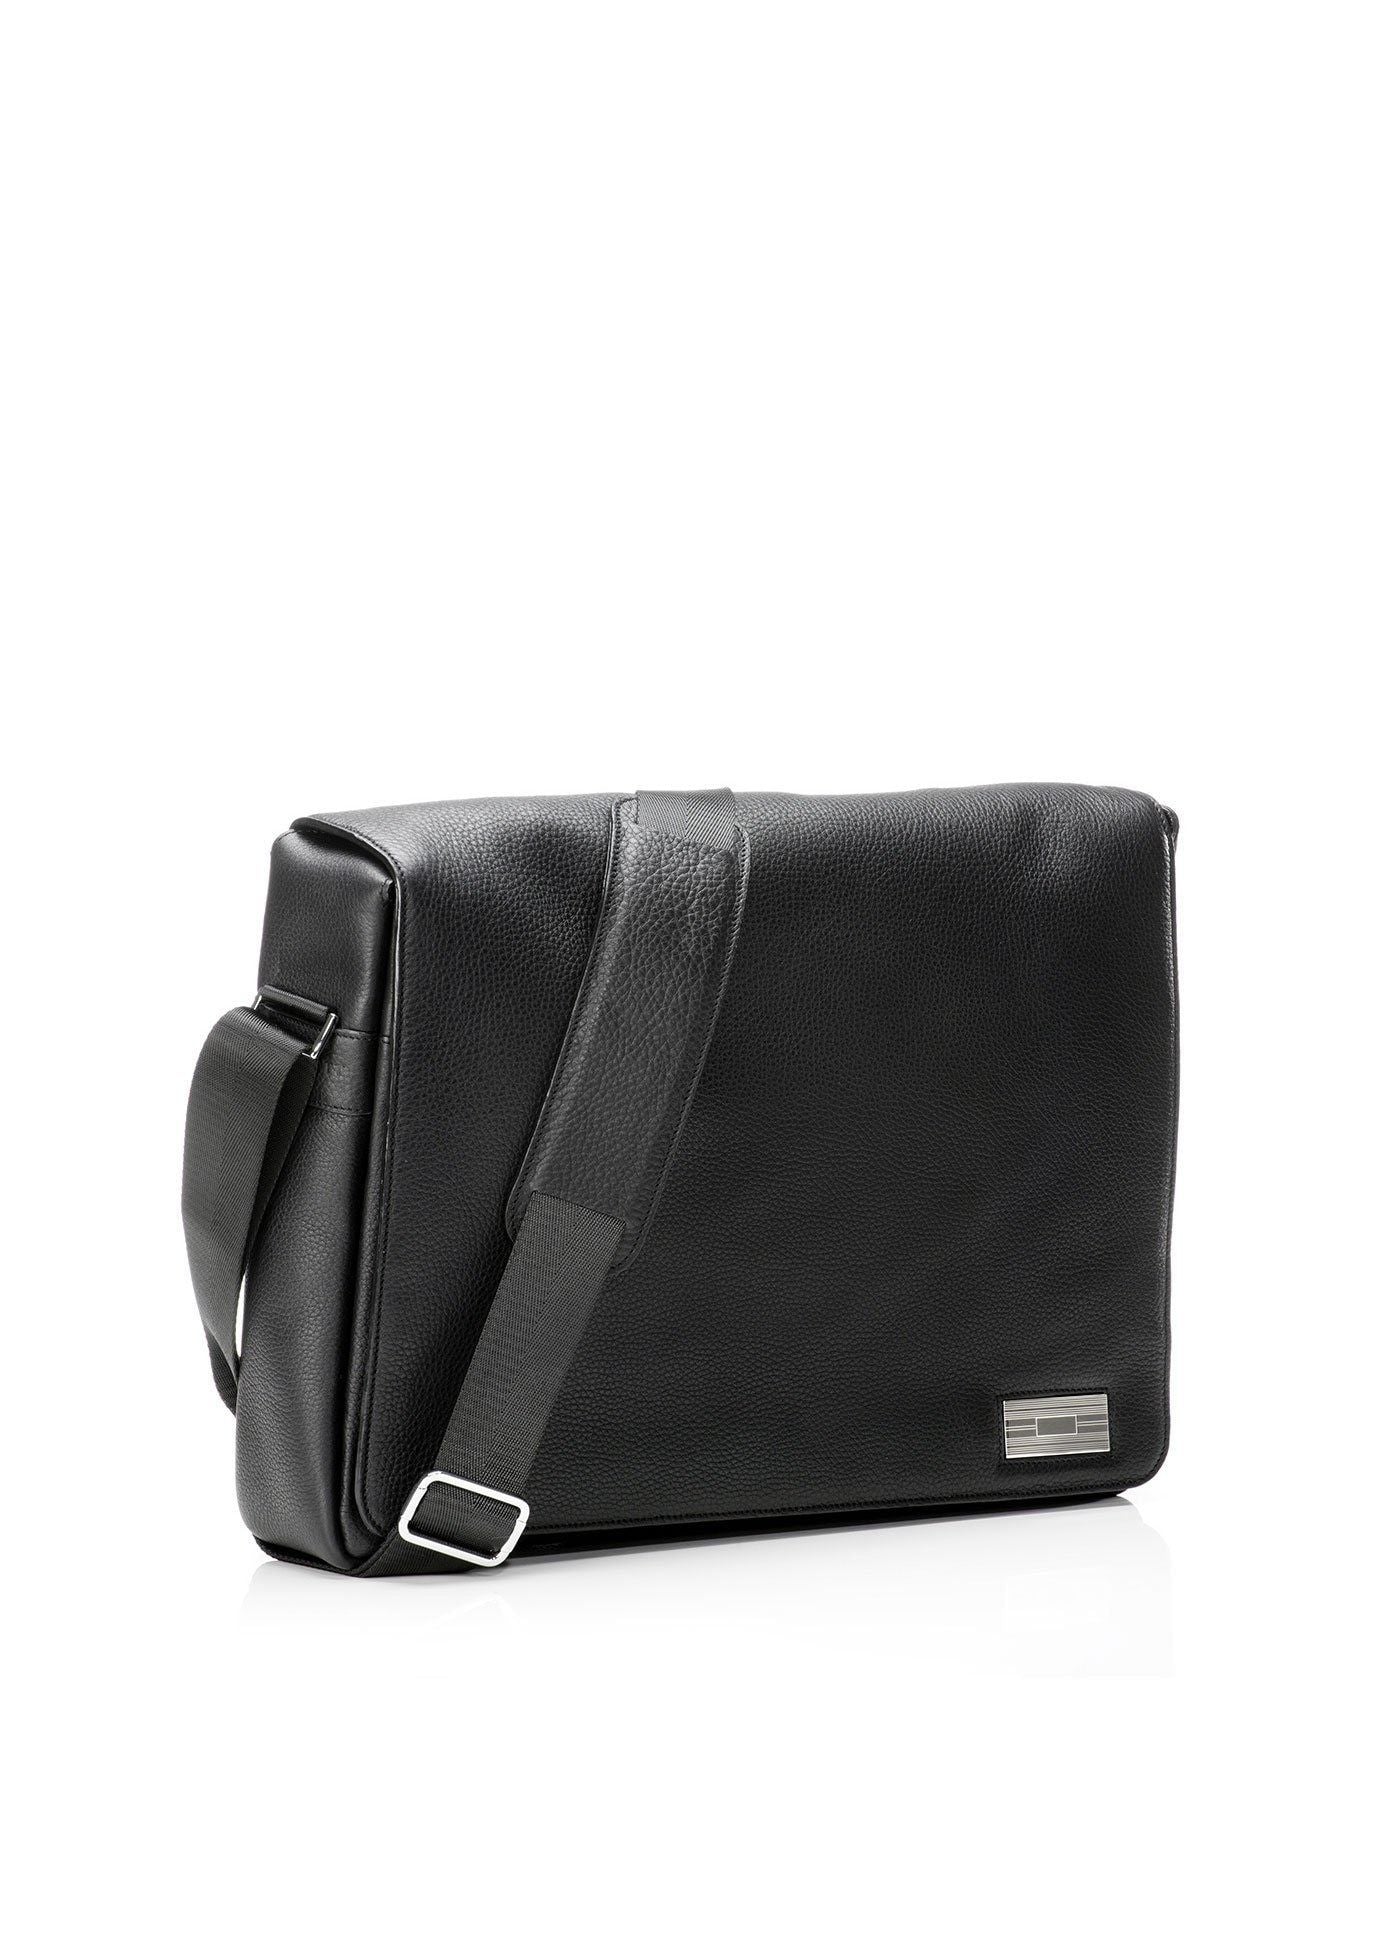 Penn Messenger Bag in Black Leather | Darby Scott